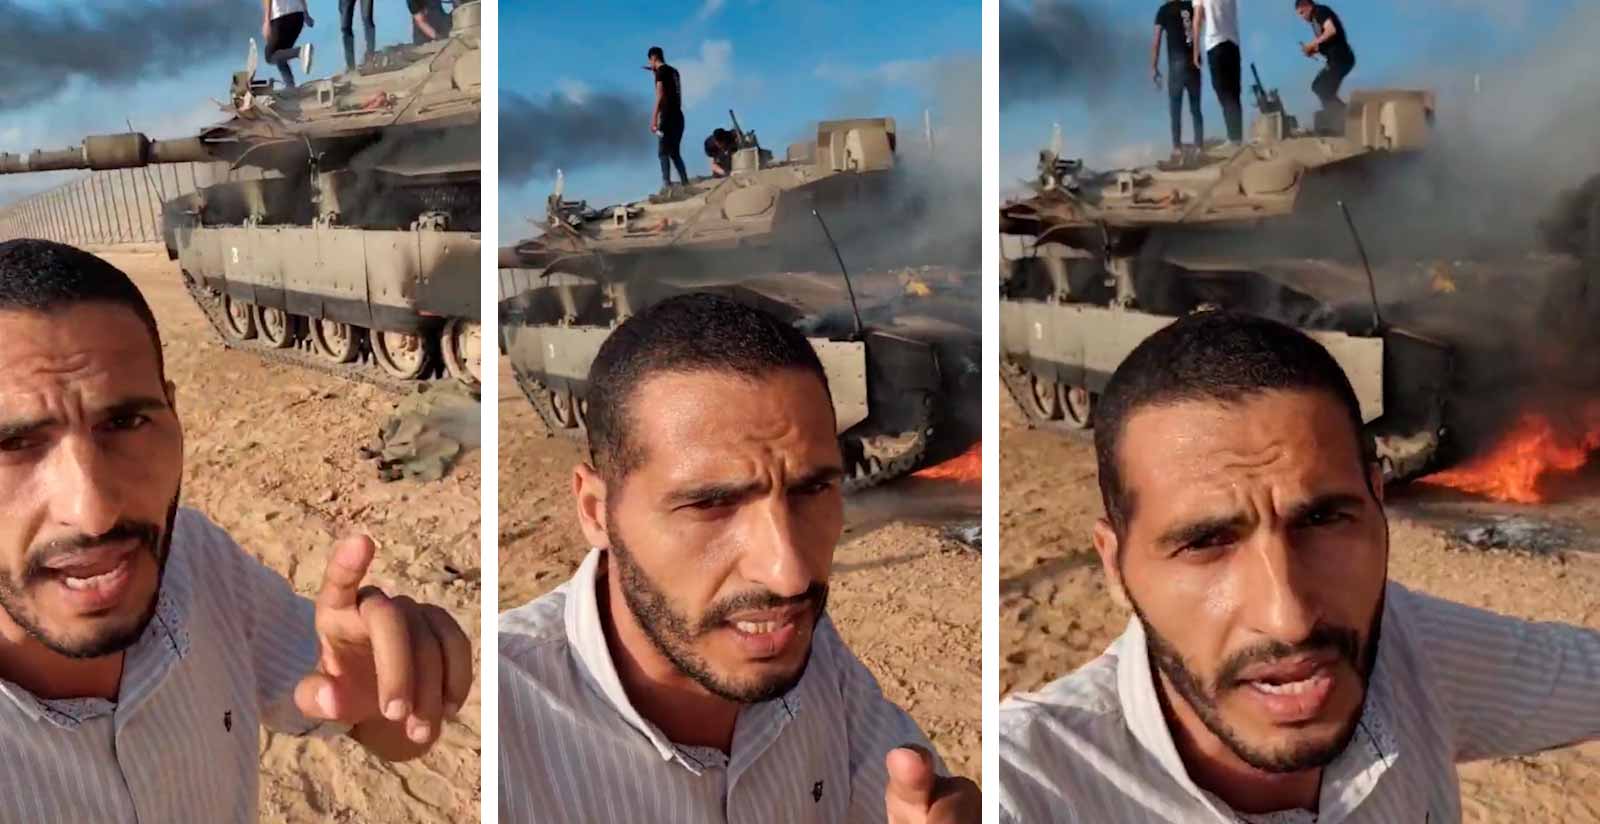 Vidéo montre un char israélien Merkava en flammes après avoir été détruit par des Palestiniens. Photo et vidéo : Telegram t.me/SputnikBrasil